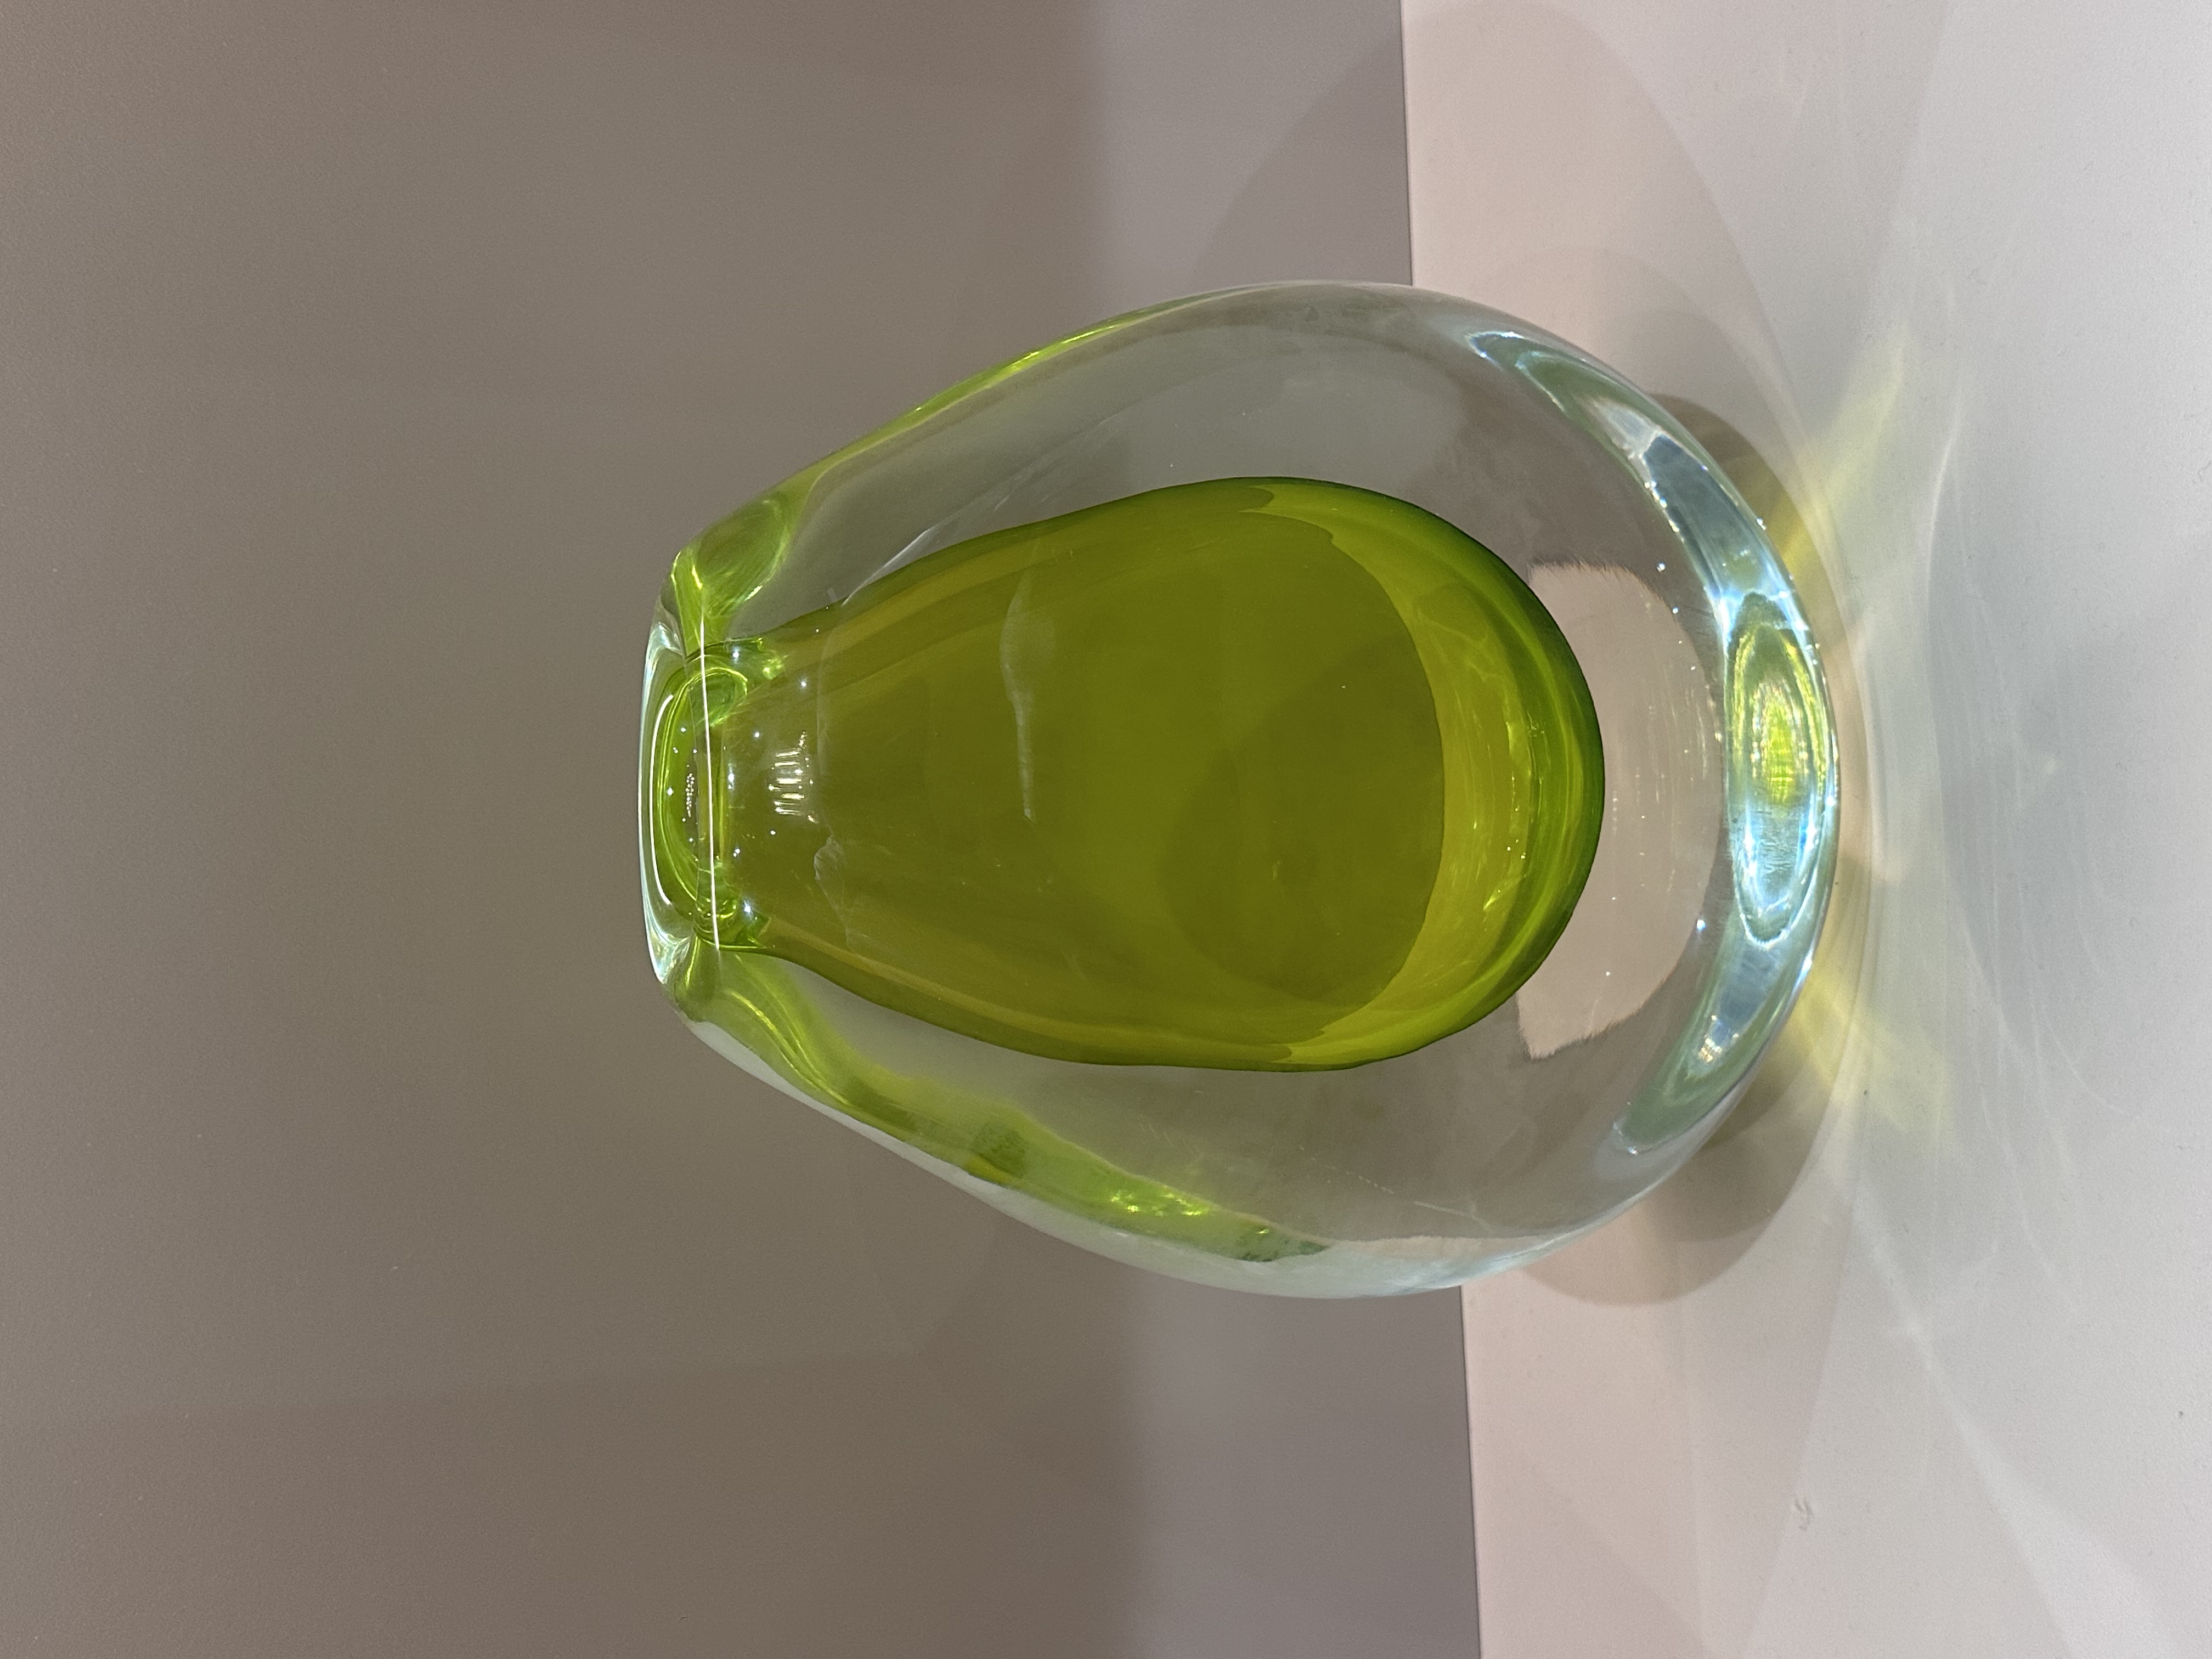 黄绿色玻璃花瓶-大 装饰品摆件